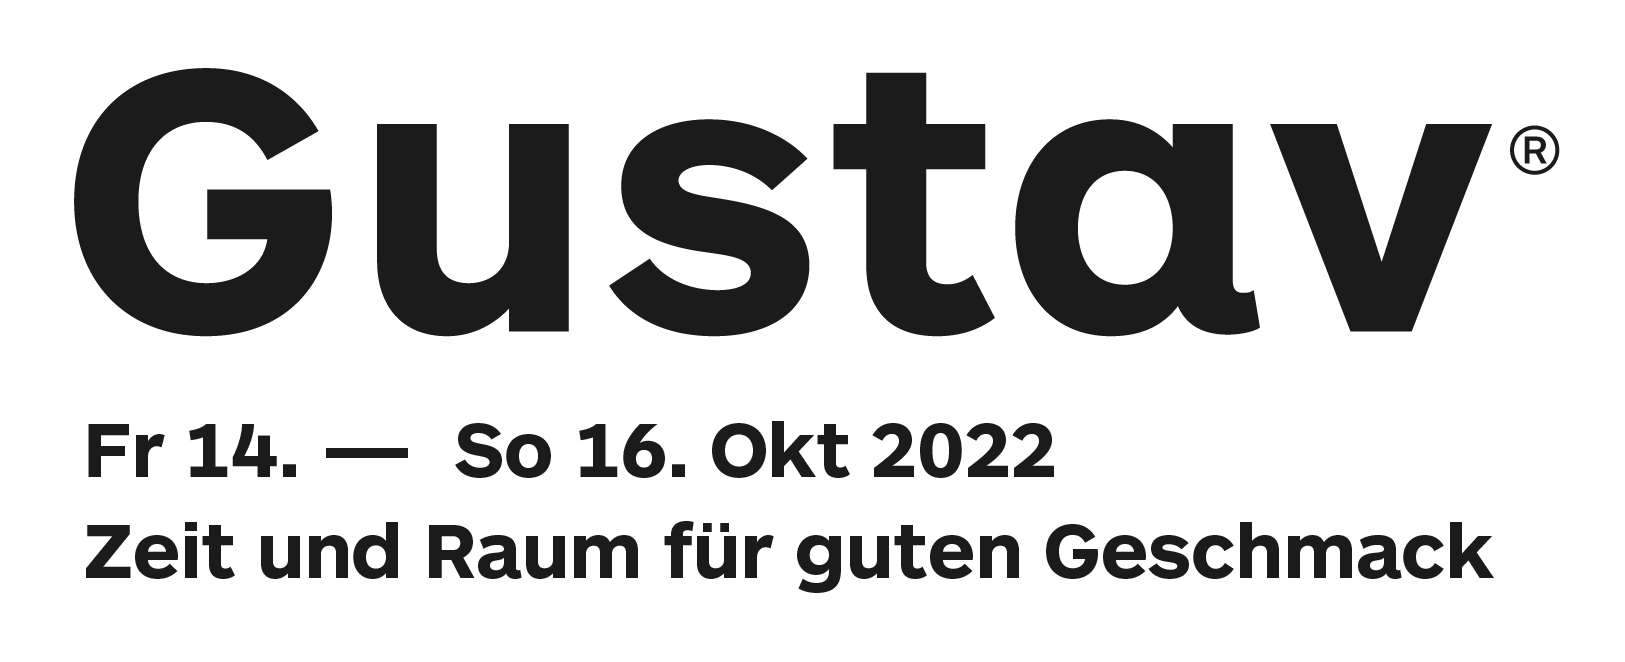 Die Gustav - Internationaler Salon für Genusskultur Logo